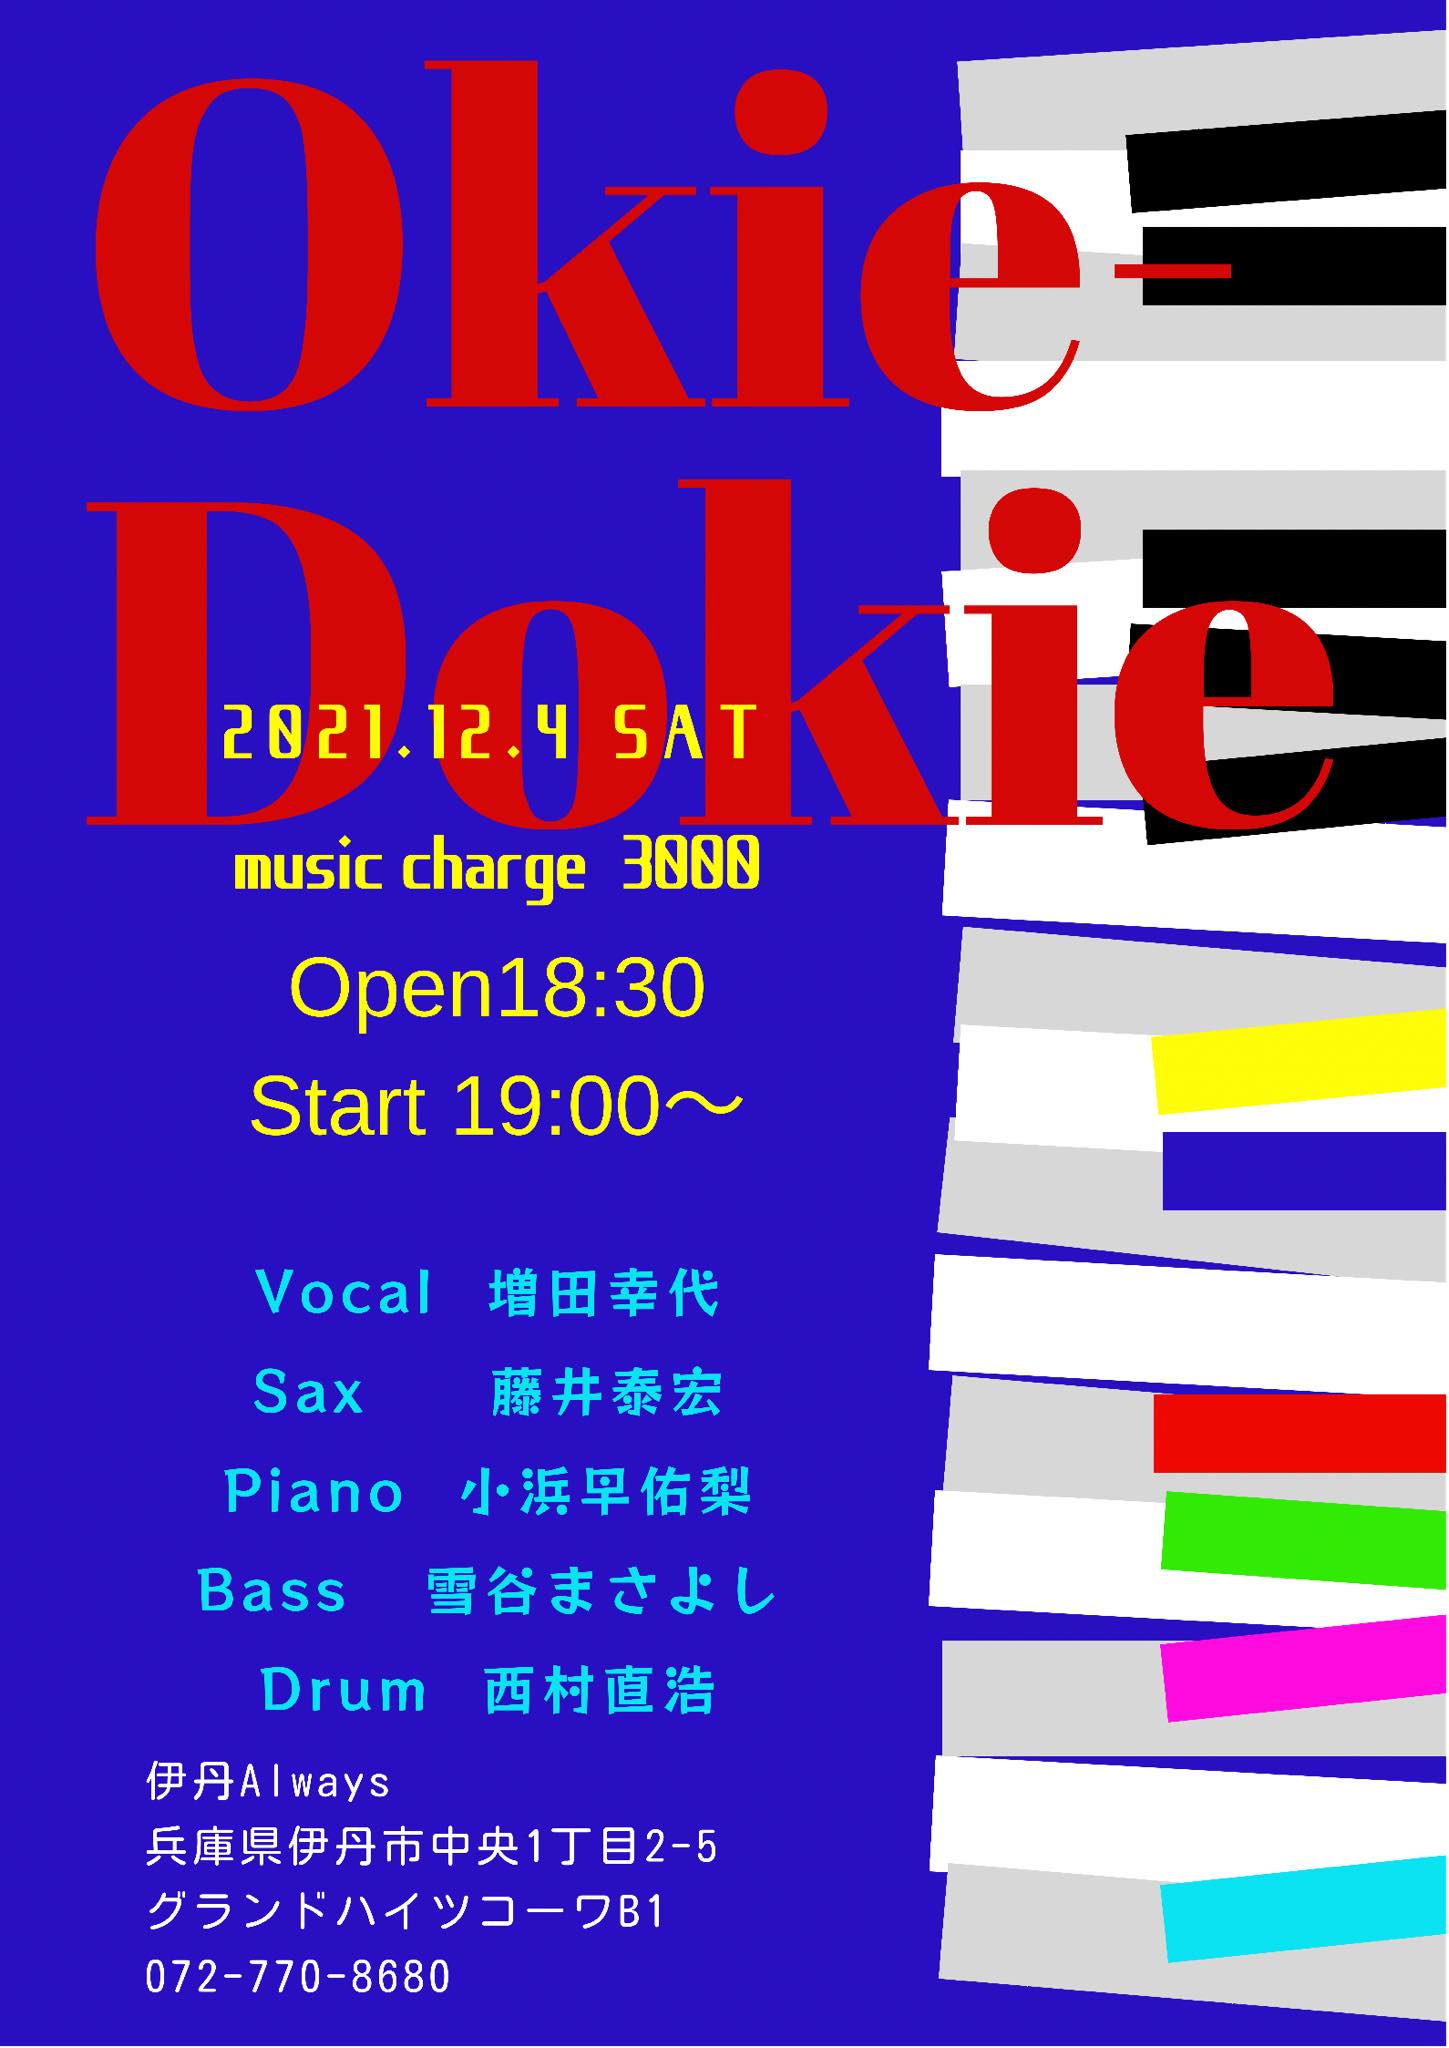 【Live】(Jazz)O-Key Do-Key